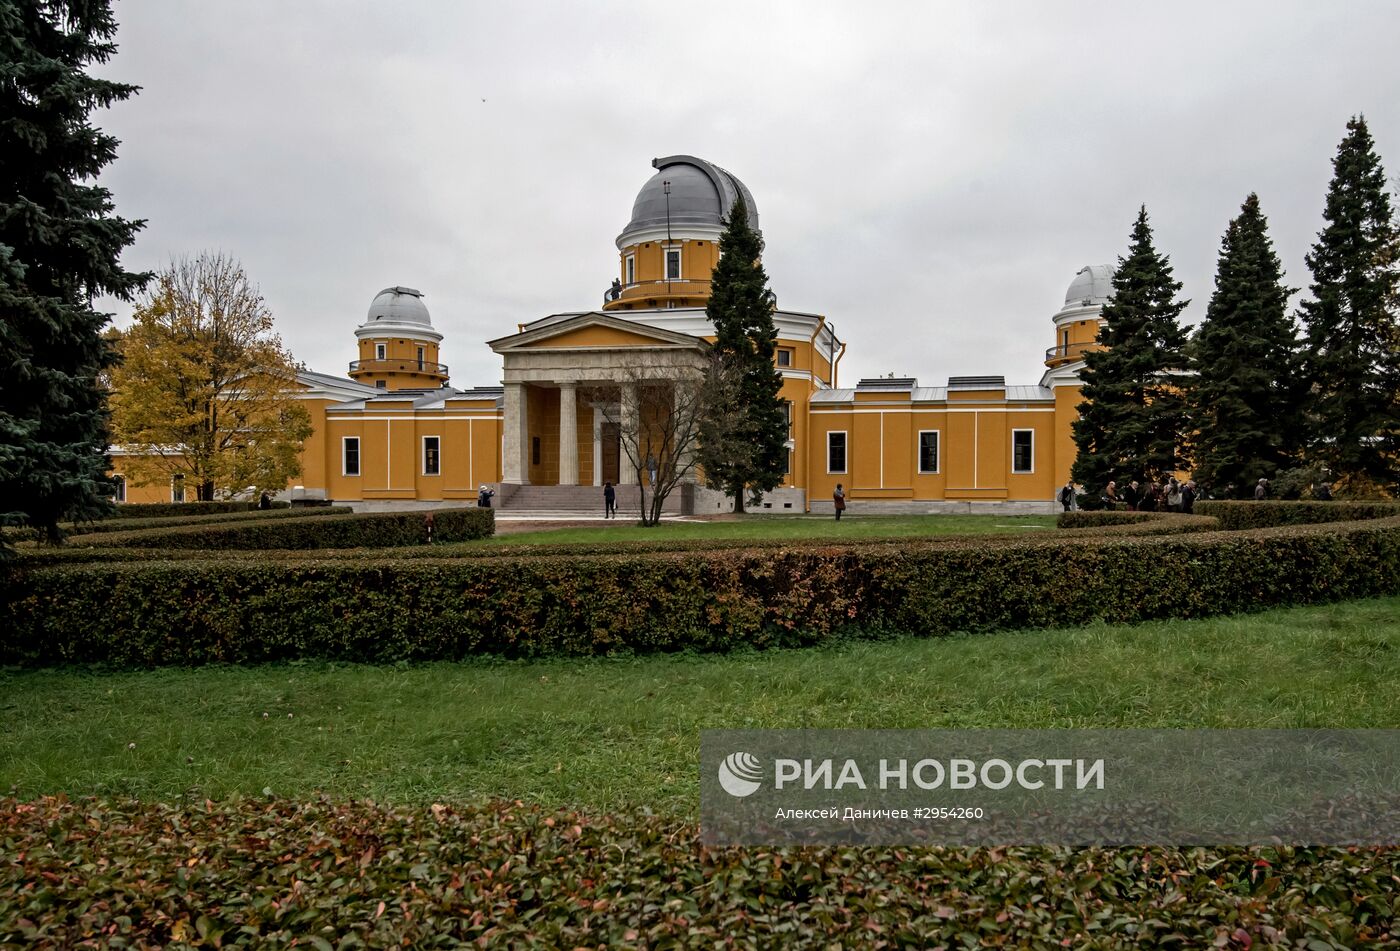 Пулковская обсерватория в Санкт-Петербурге